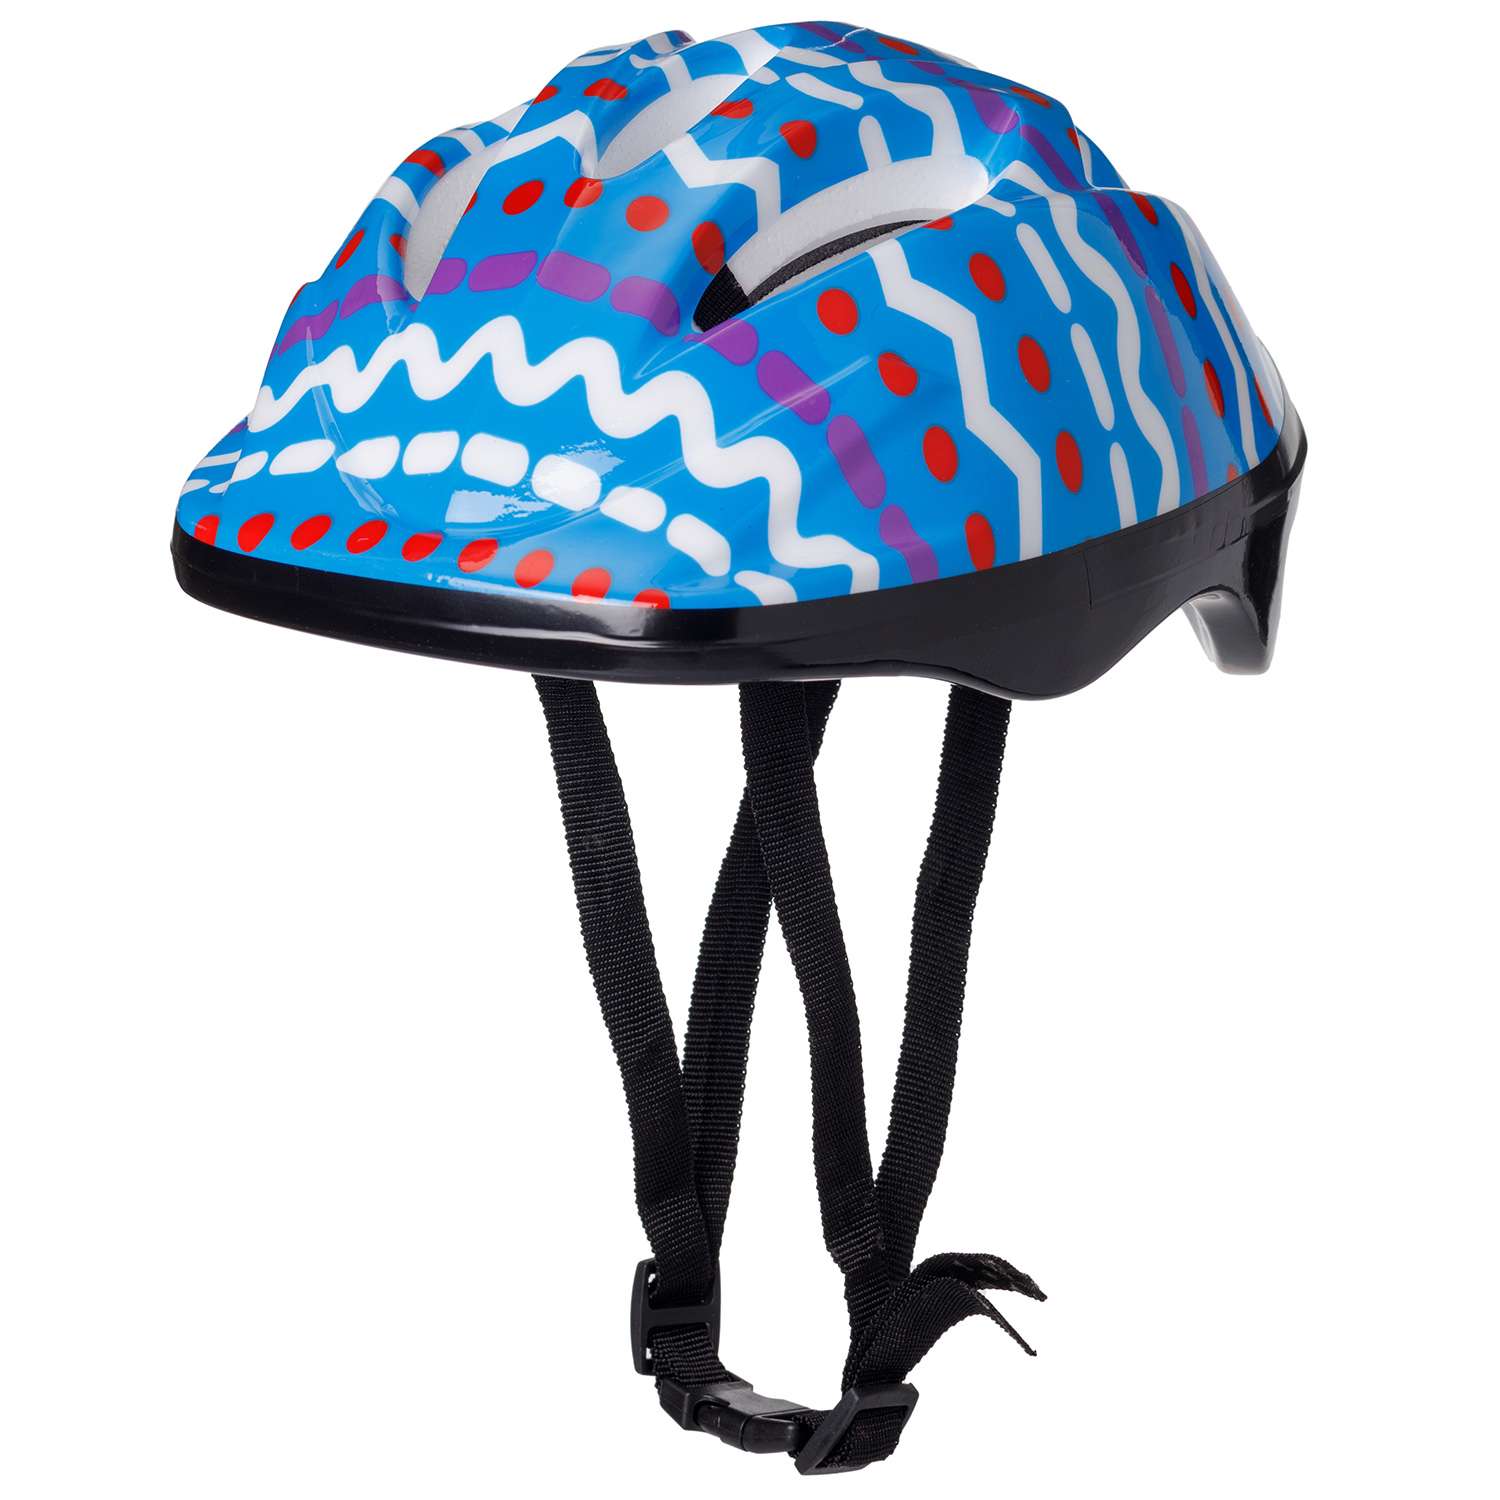 Защита Шлем BABY STYLE для роликовых коньков синий принт обхват 57 см - фото 1